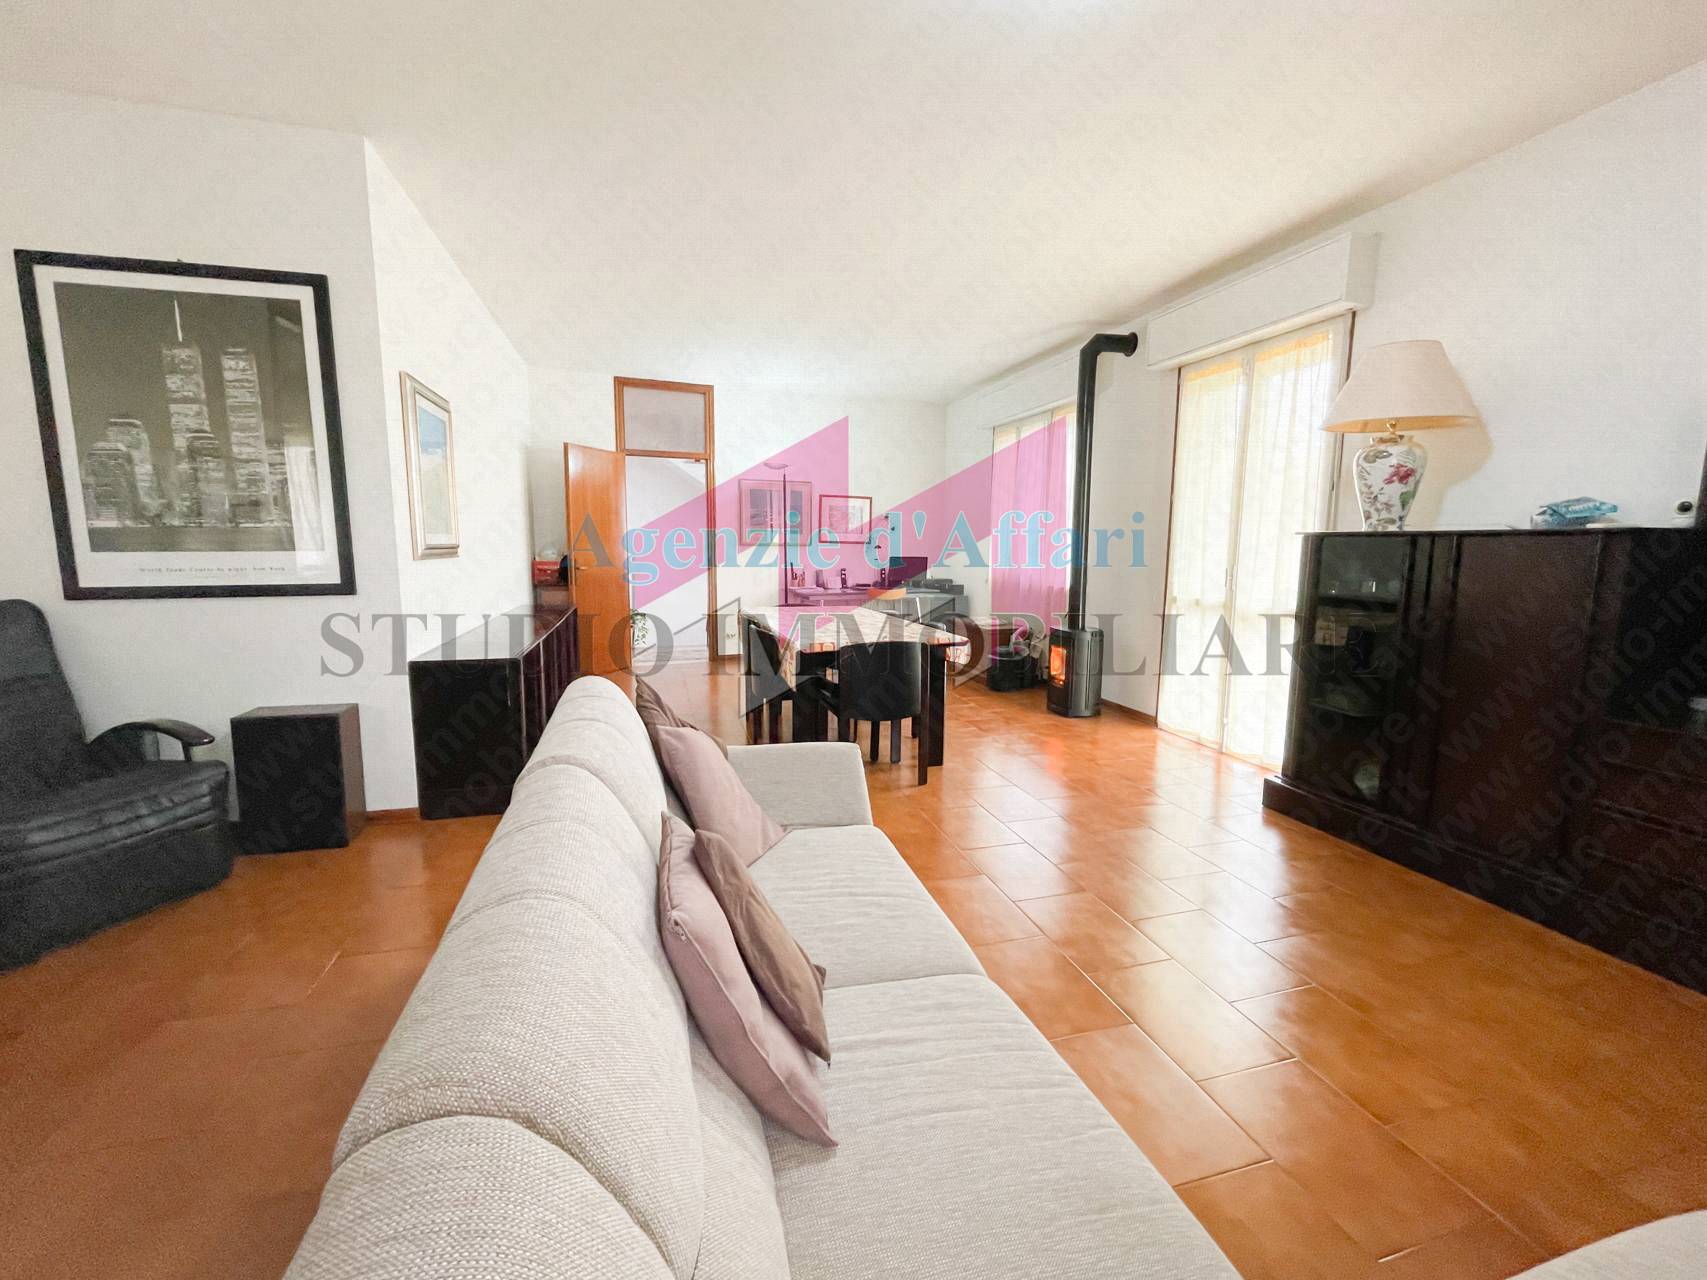 Villa in vendita a Sermide, 10 locali, prezzo € 240.000 | PortaleAgenzieImmobiliari.it